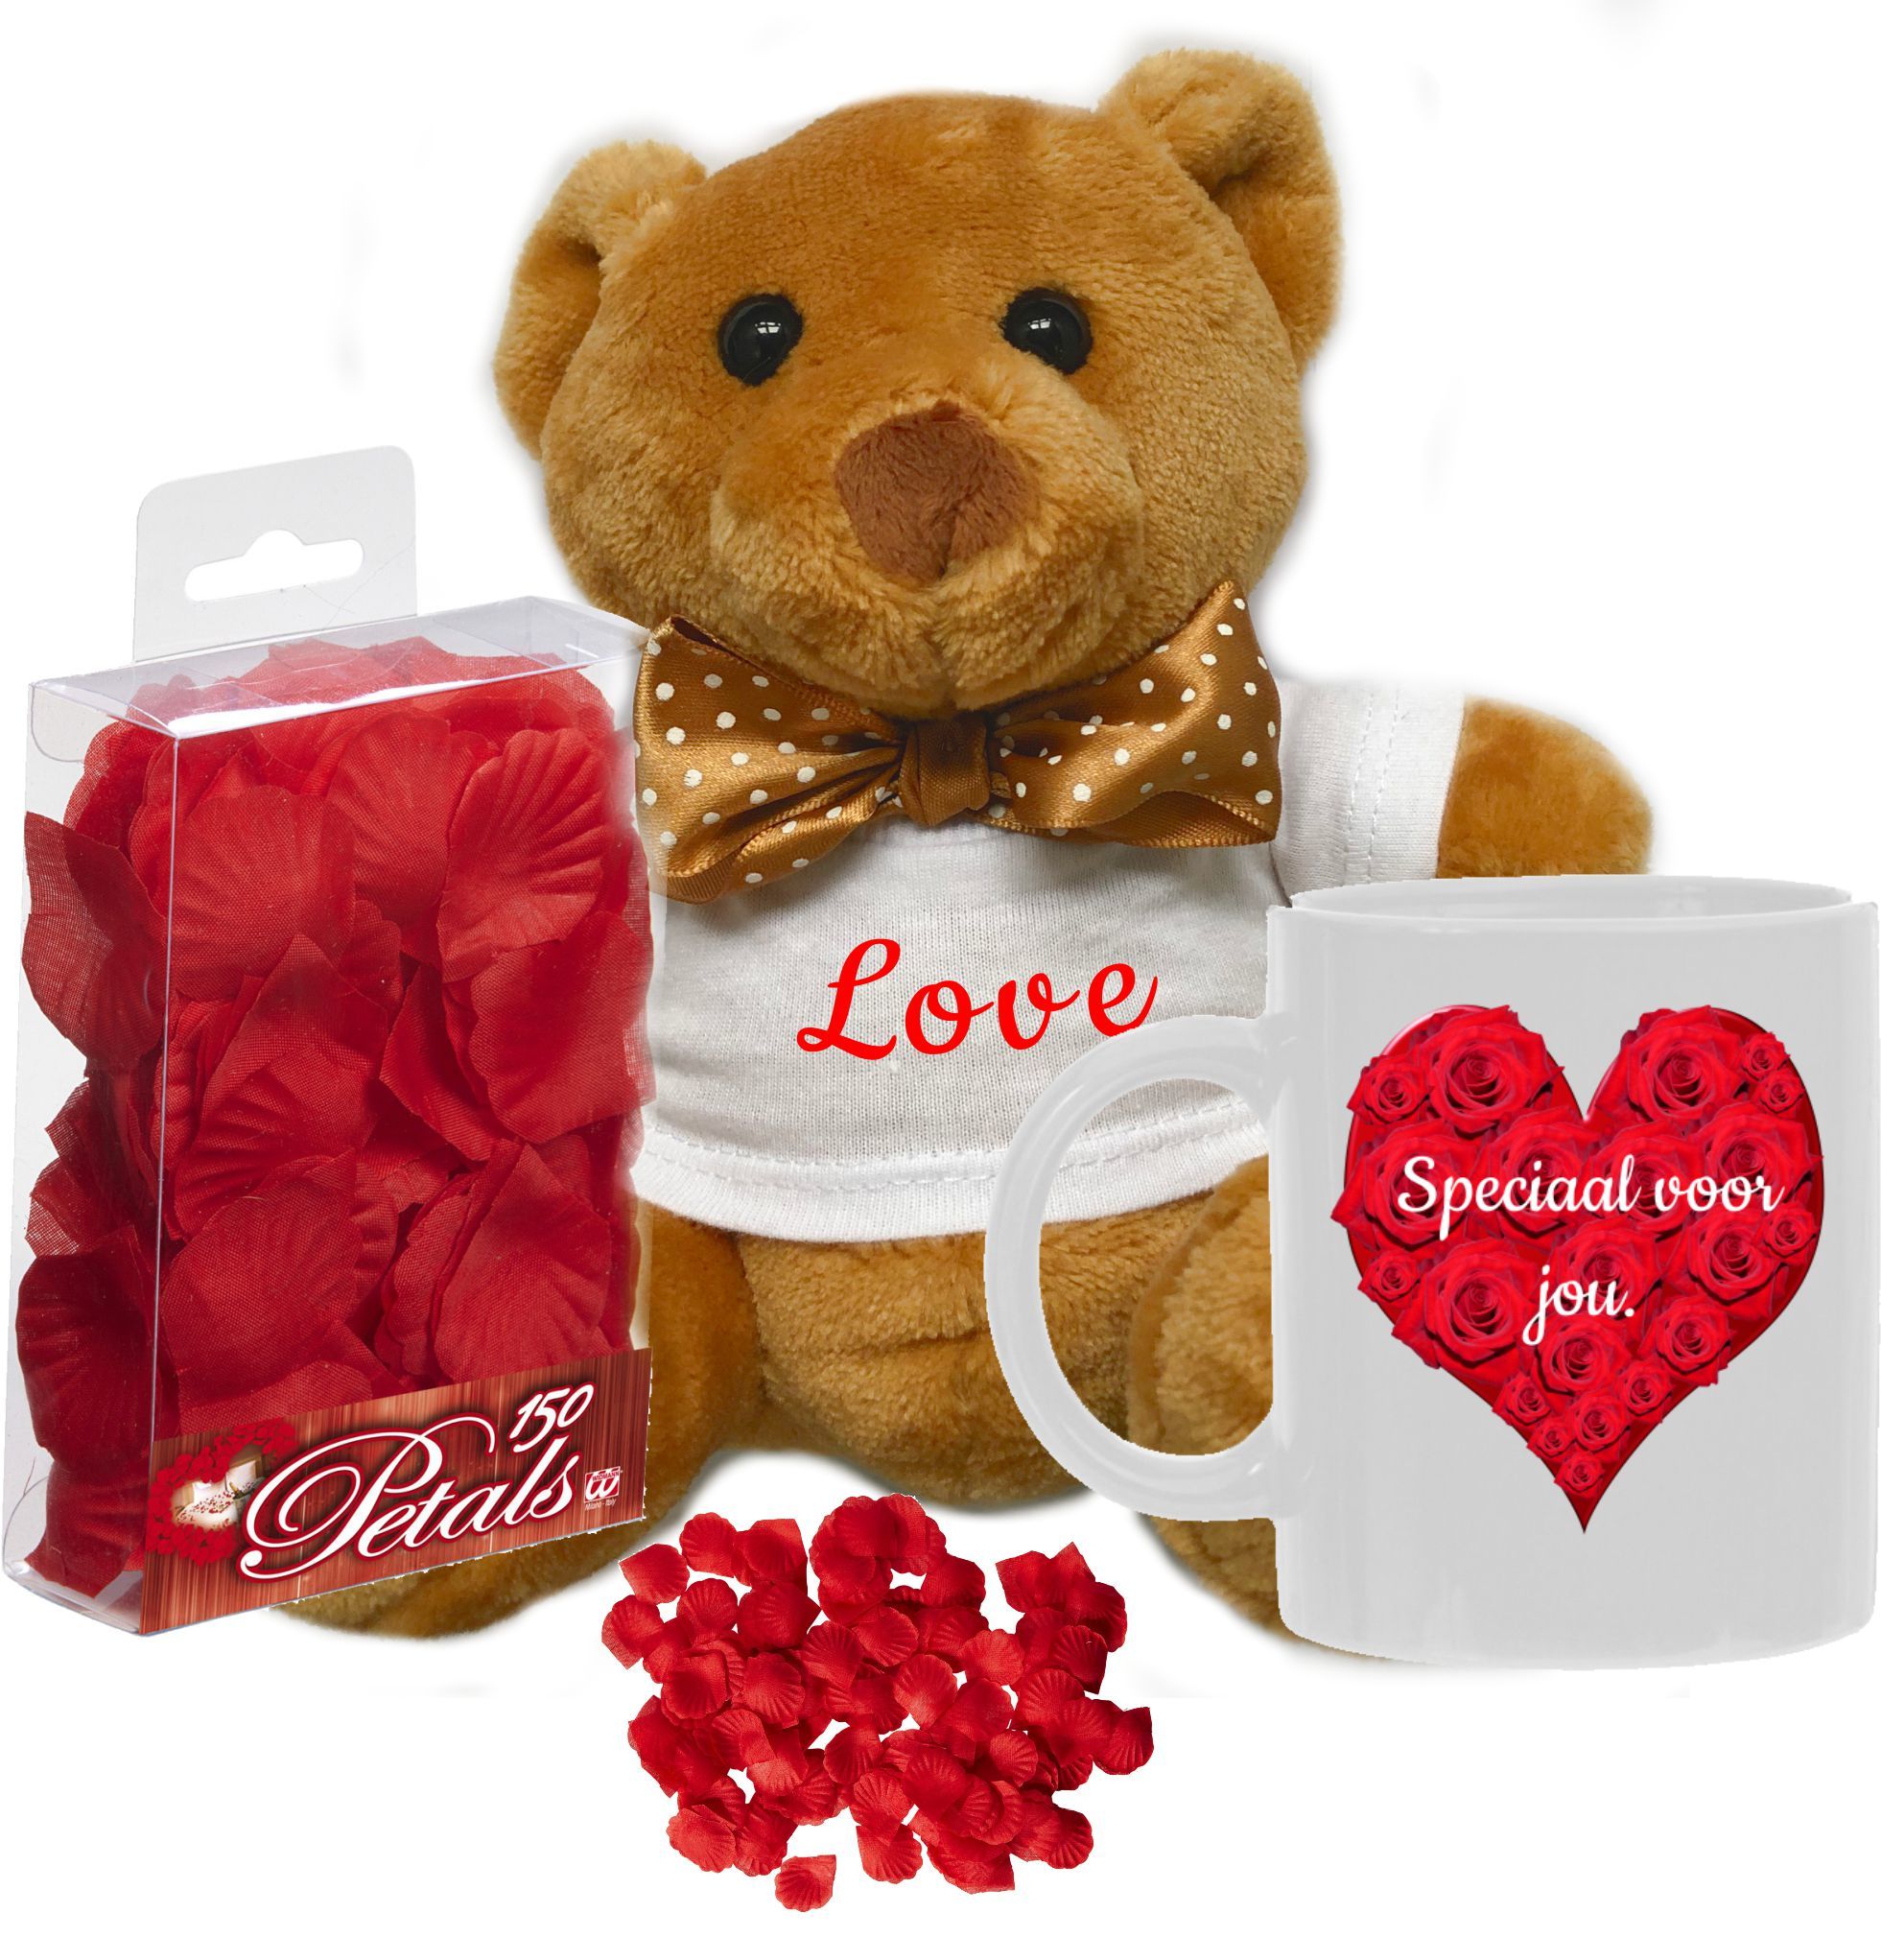 Valentijns verrassingspakket verras je geliefde met een leuk Valentijnskado